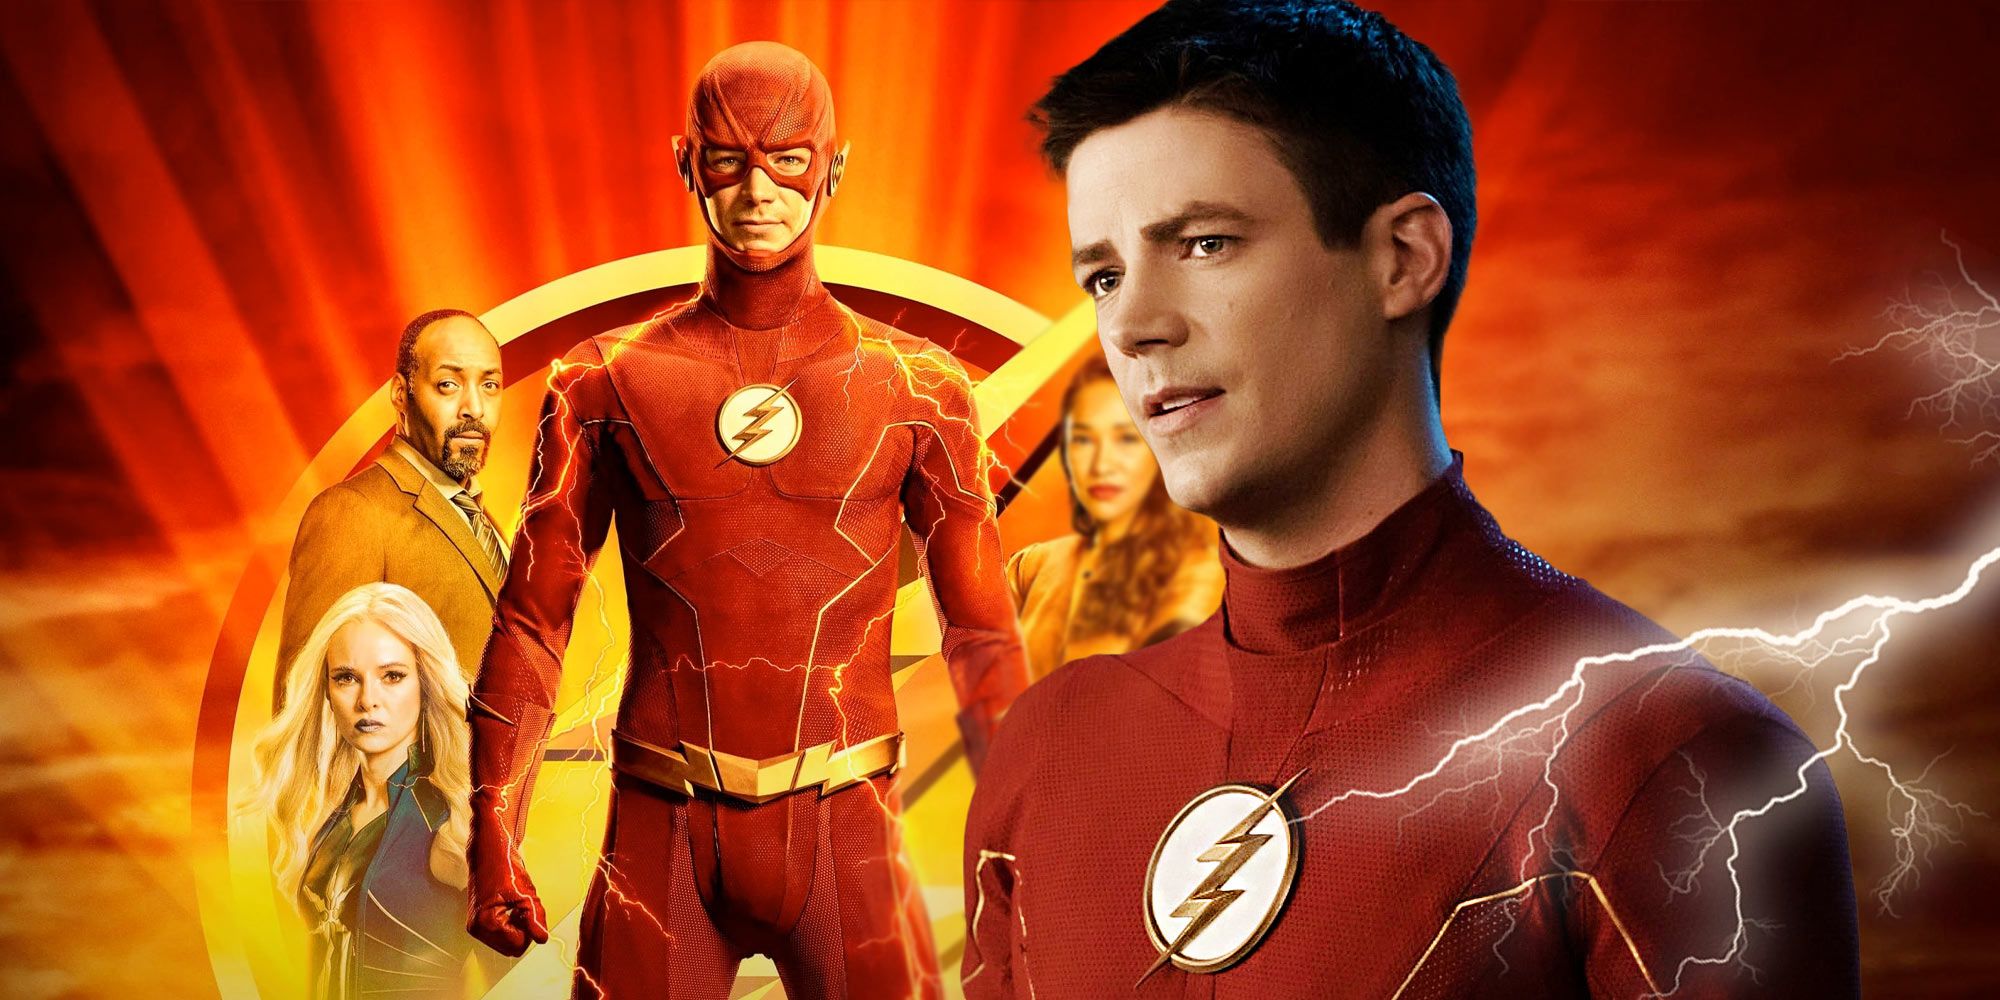 Detalles de la temporada 9 de The Flash: Grant Gustin supuestamente finaliza el contrato